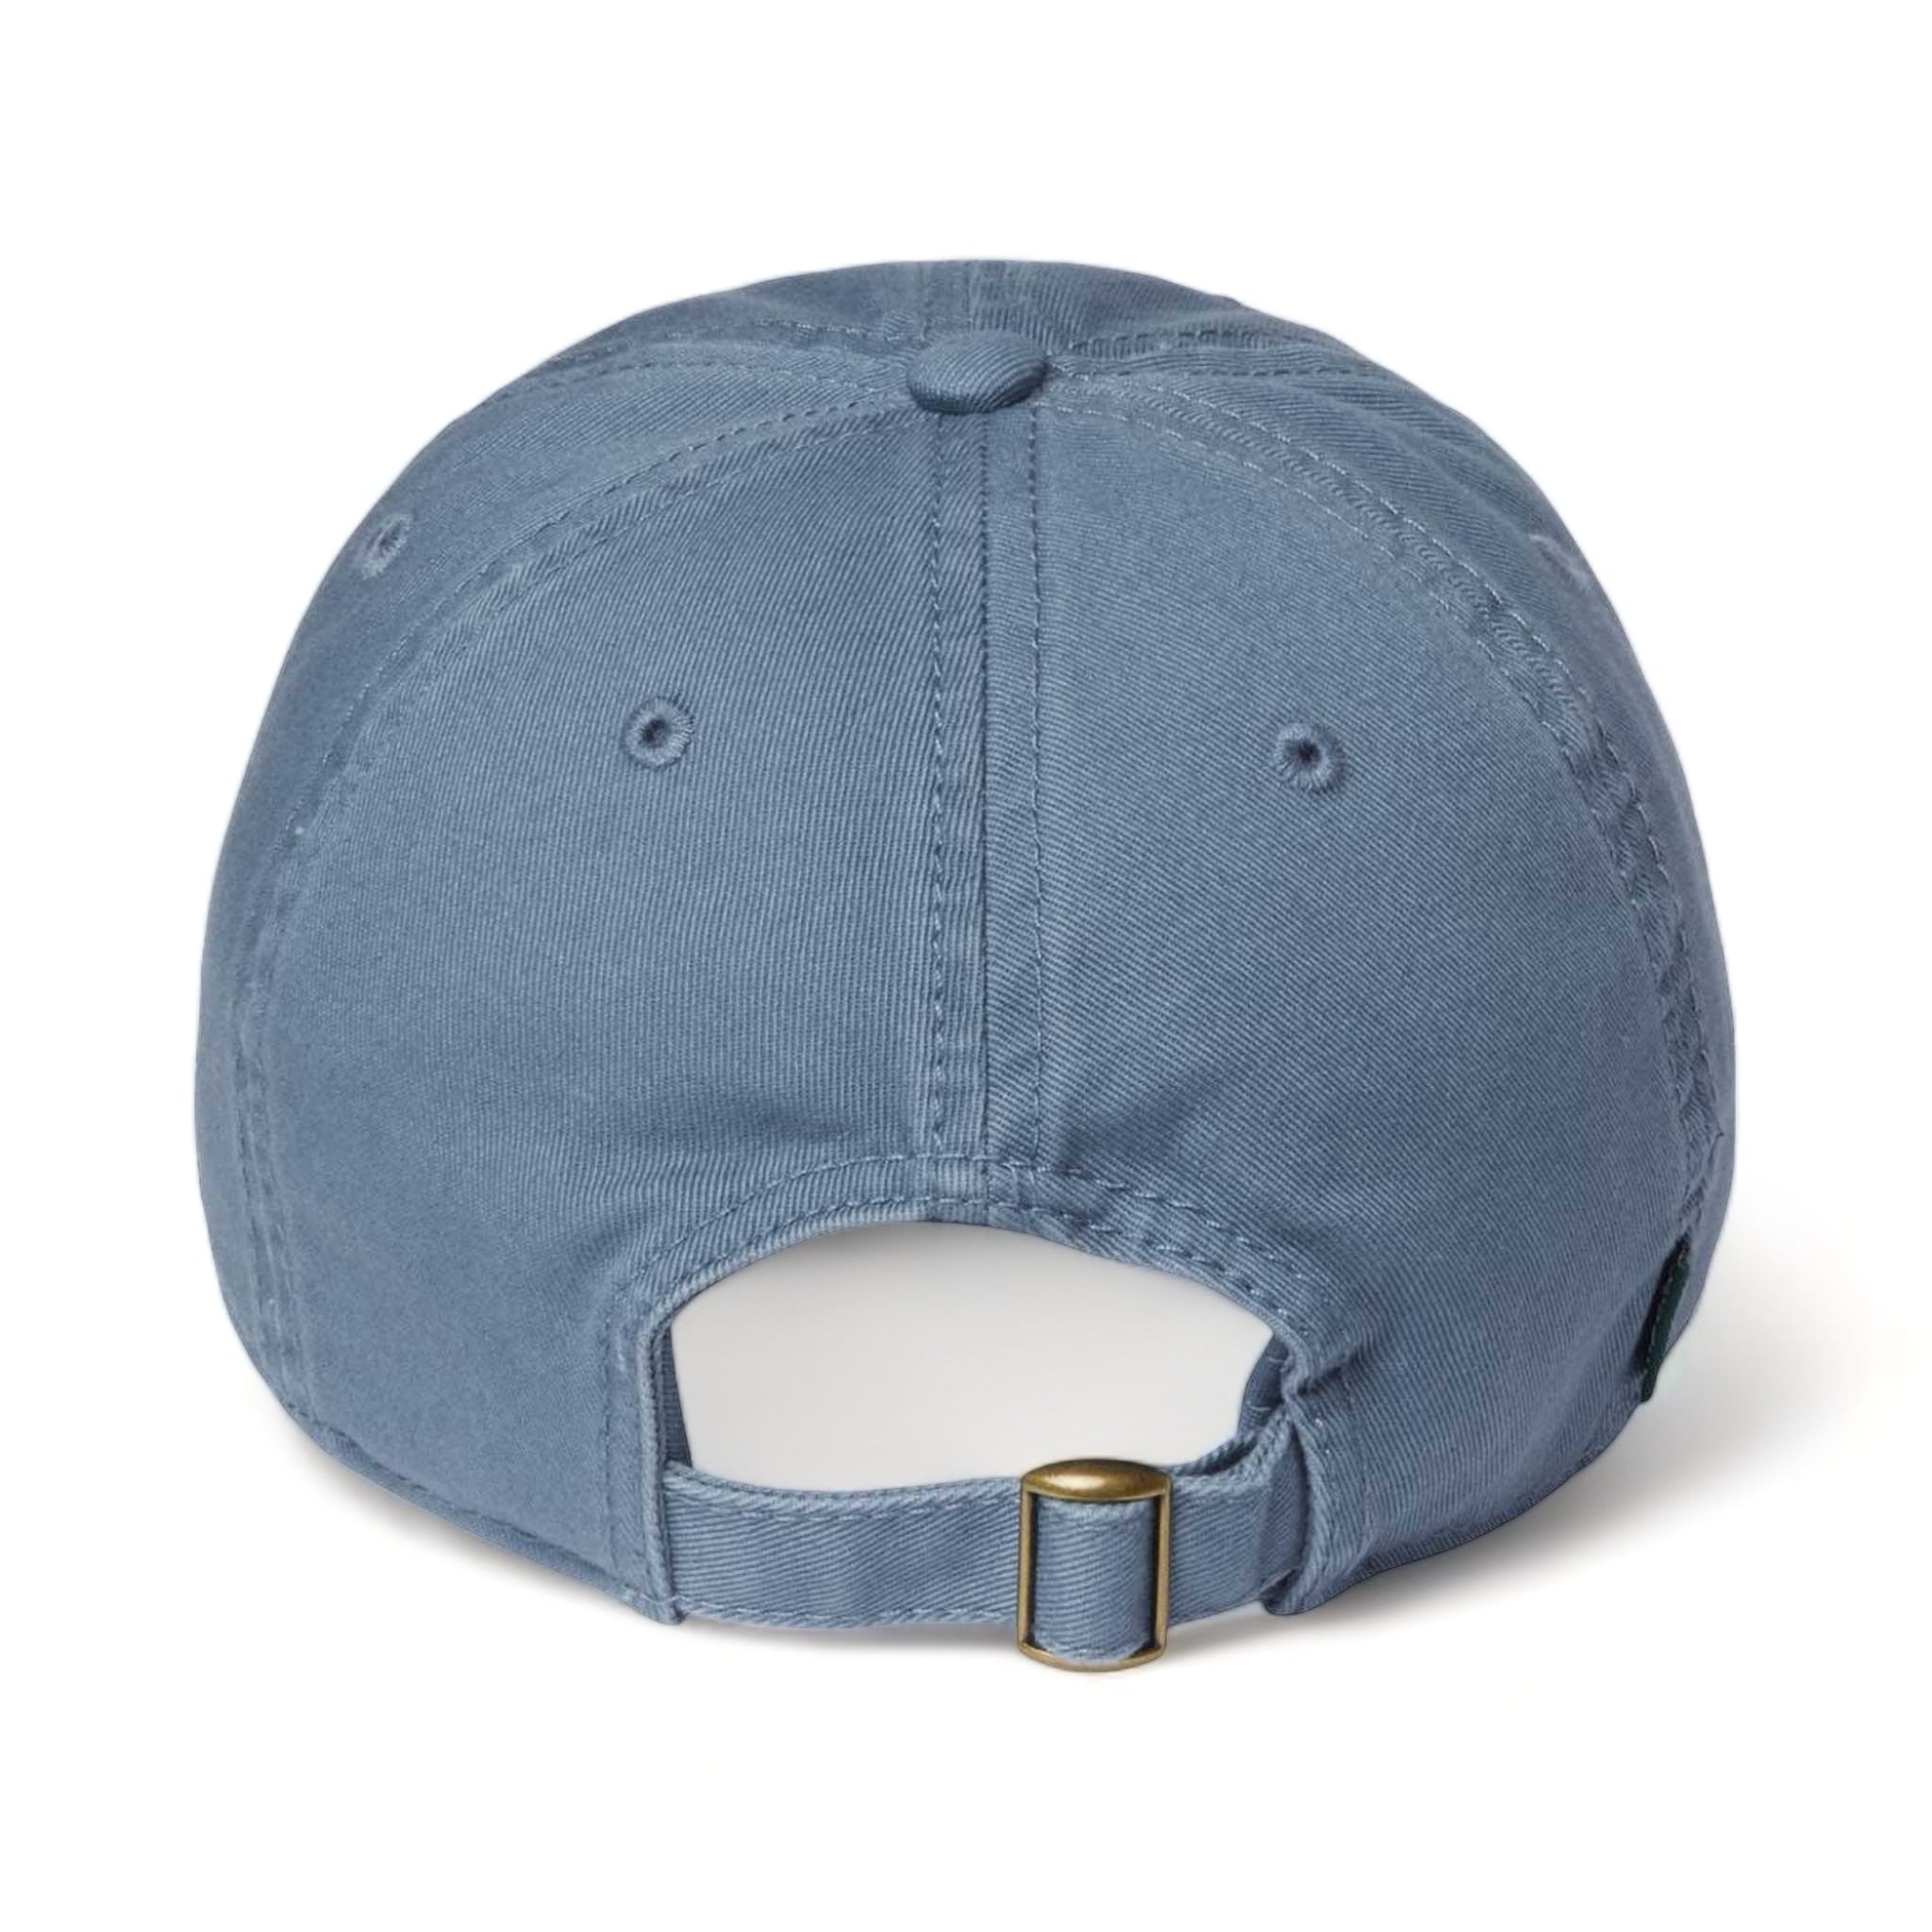 Back view of LEGACY EZA custom hat in lake blue